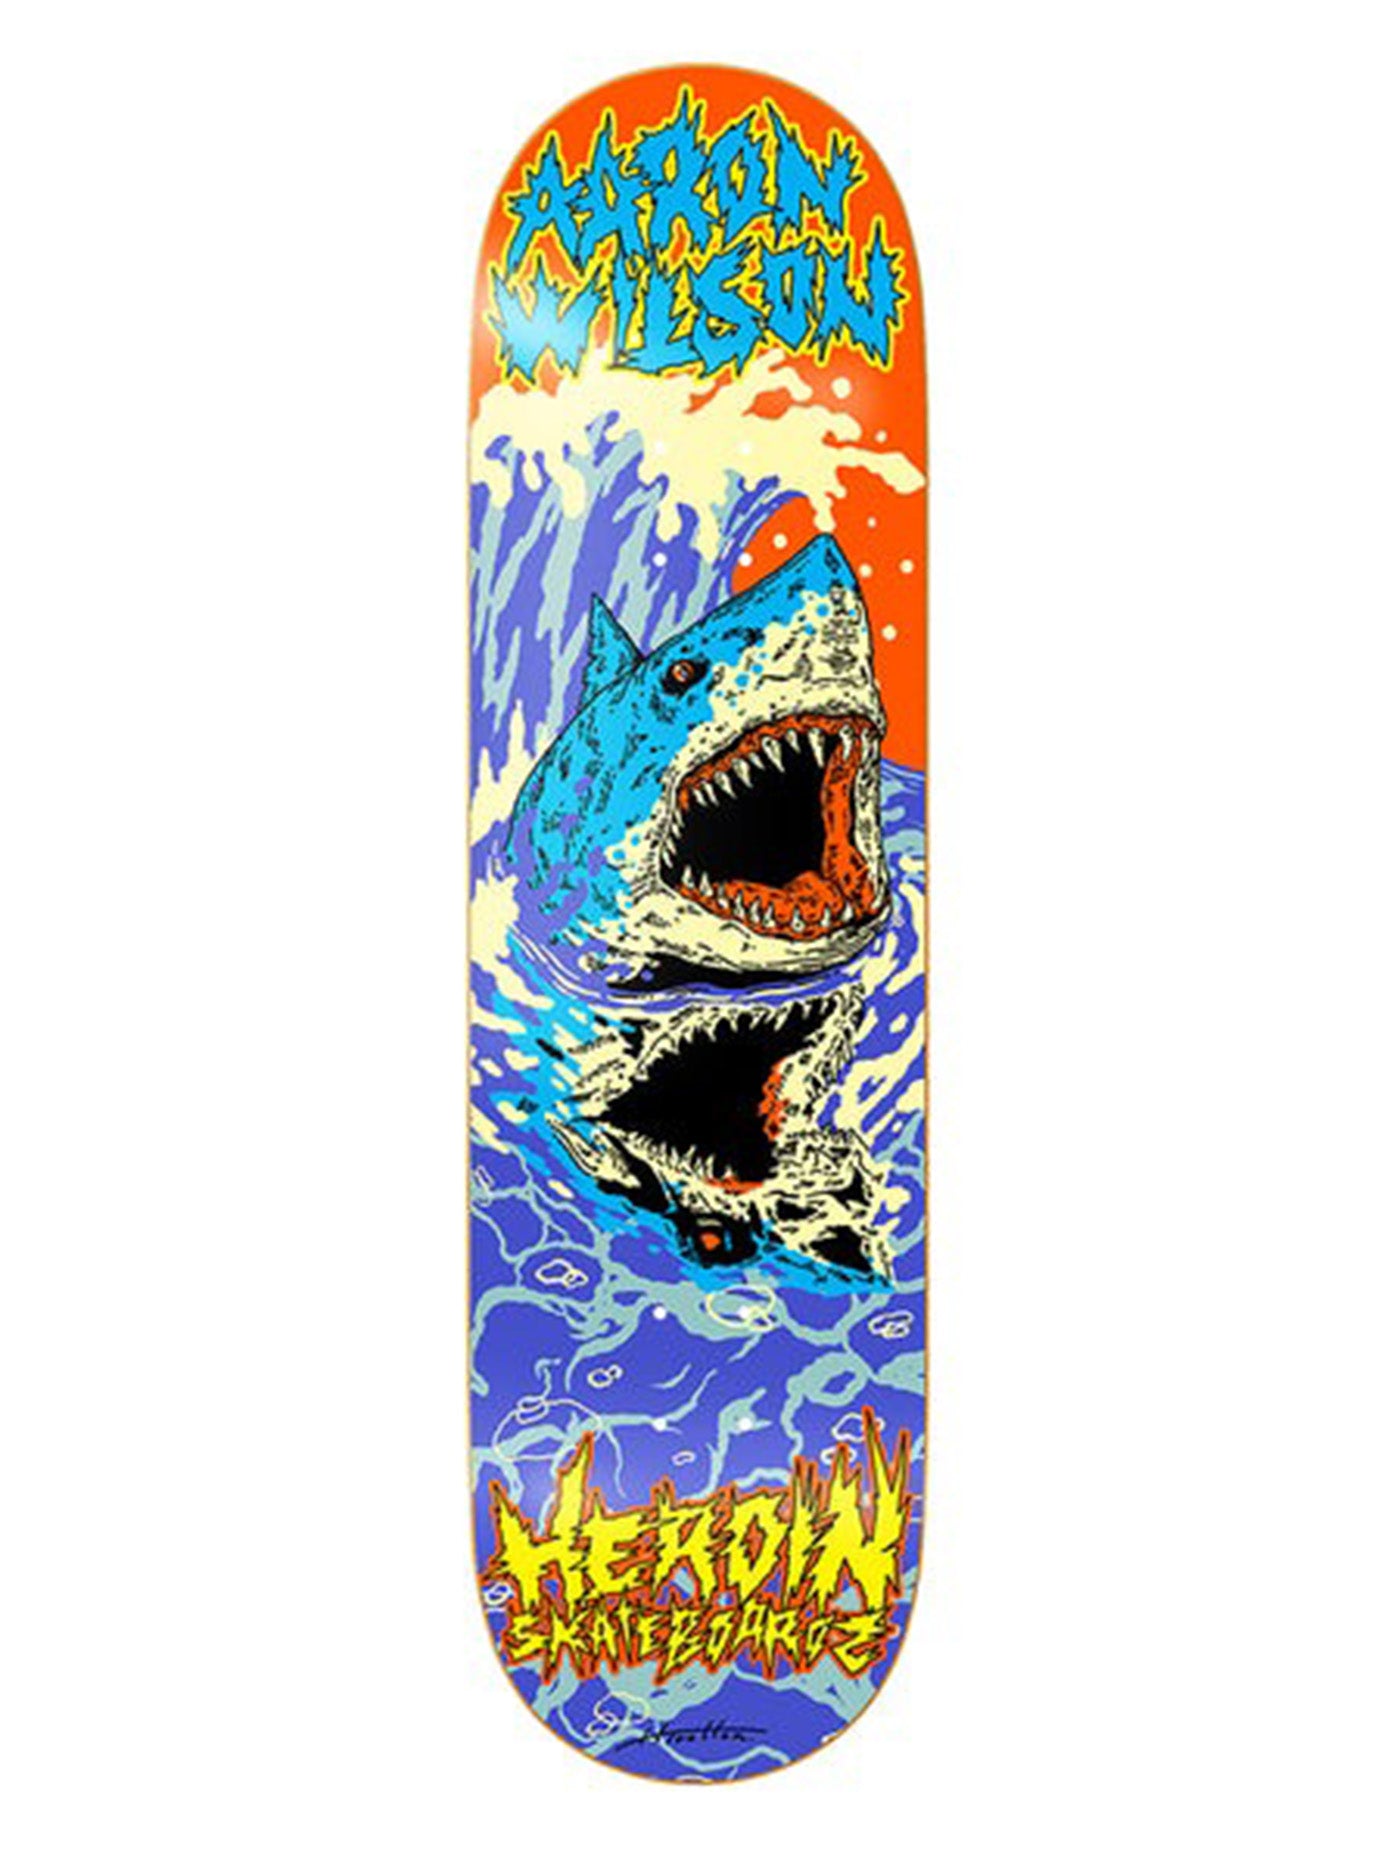 Heroin Dead Reflections Aaron Wilson Skateboard Deck